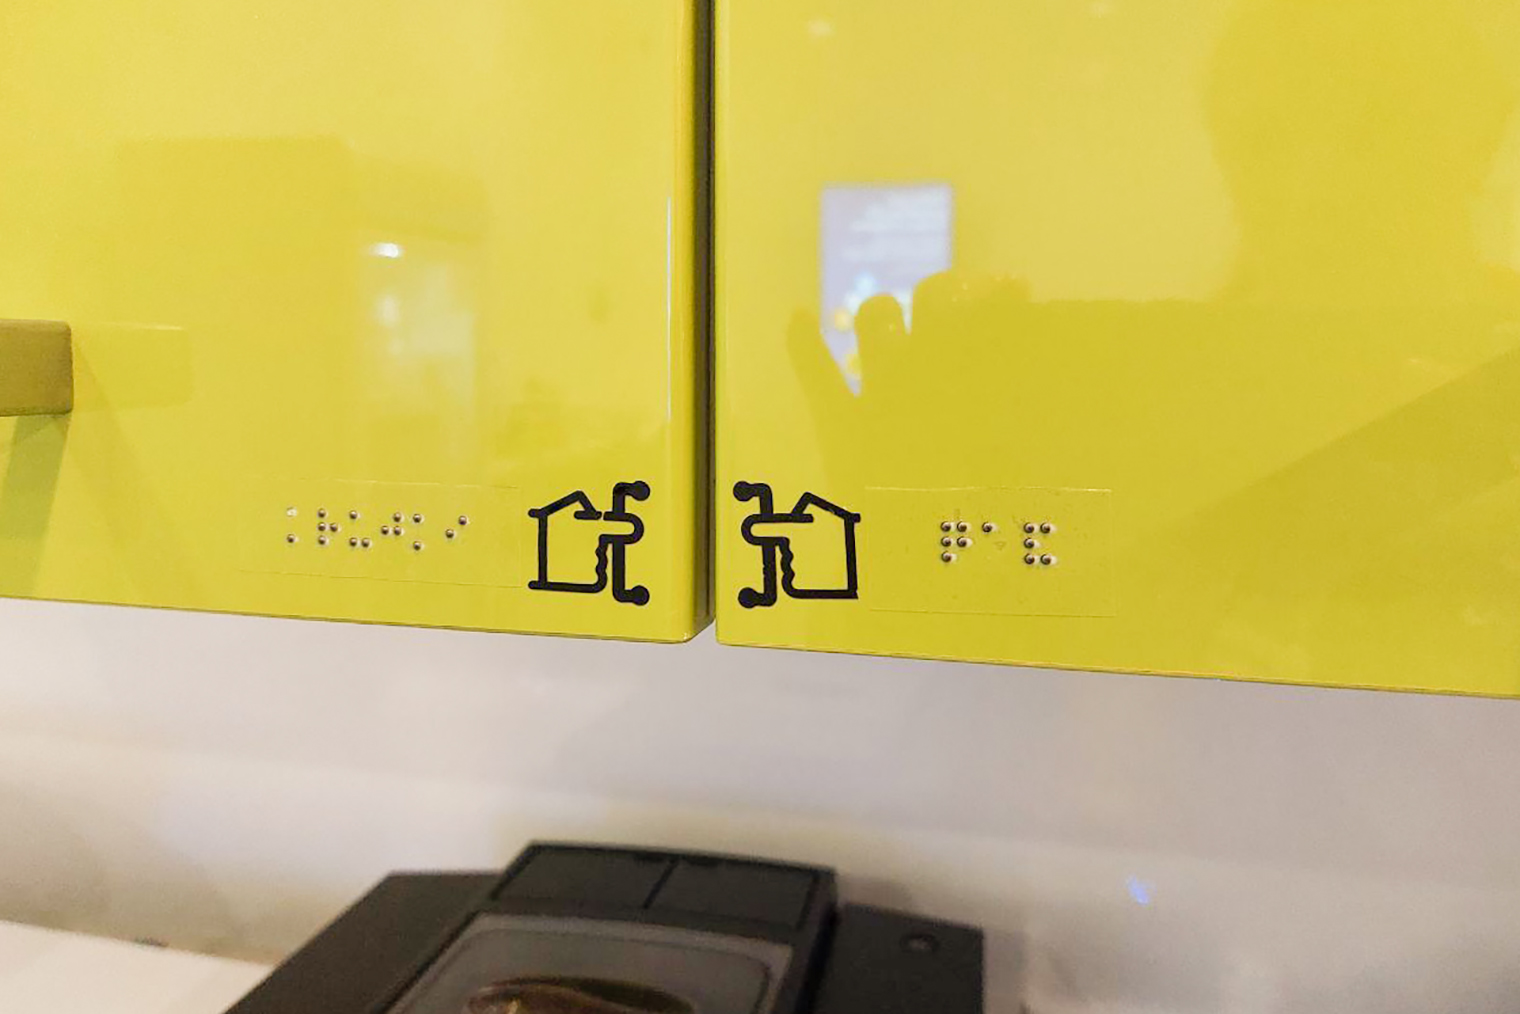 Надписи на шрифте Брайля в кофе⁠-⁠пойнте подсказывают, где тарелки, кружки и чай. Фотография: команда инклюзии «Яндекса»